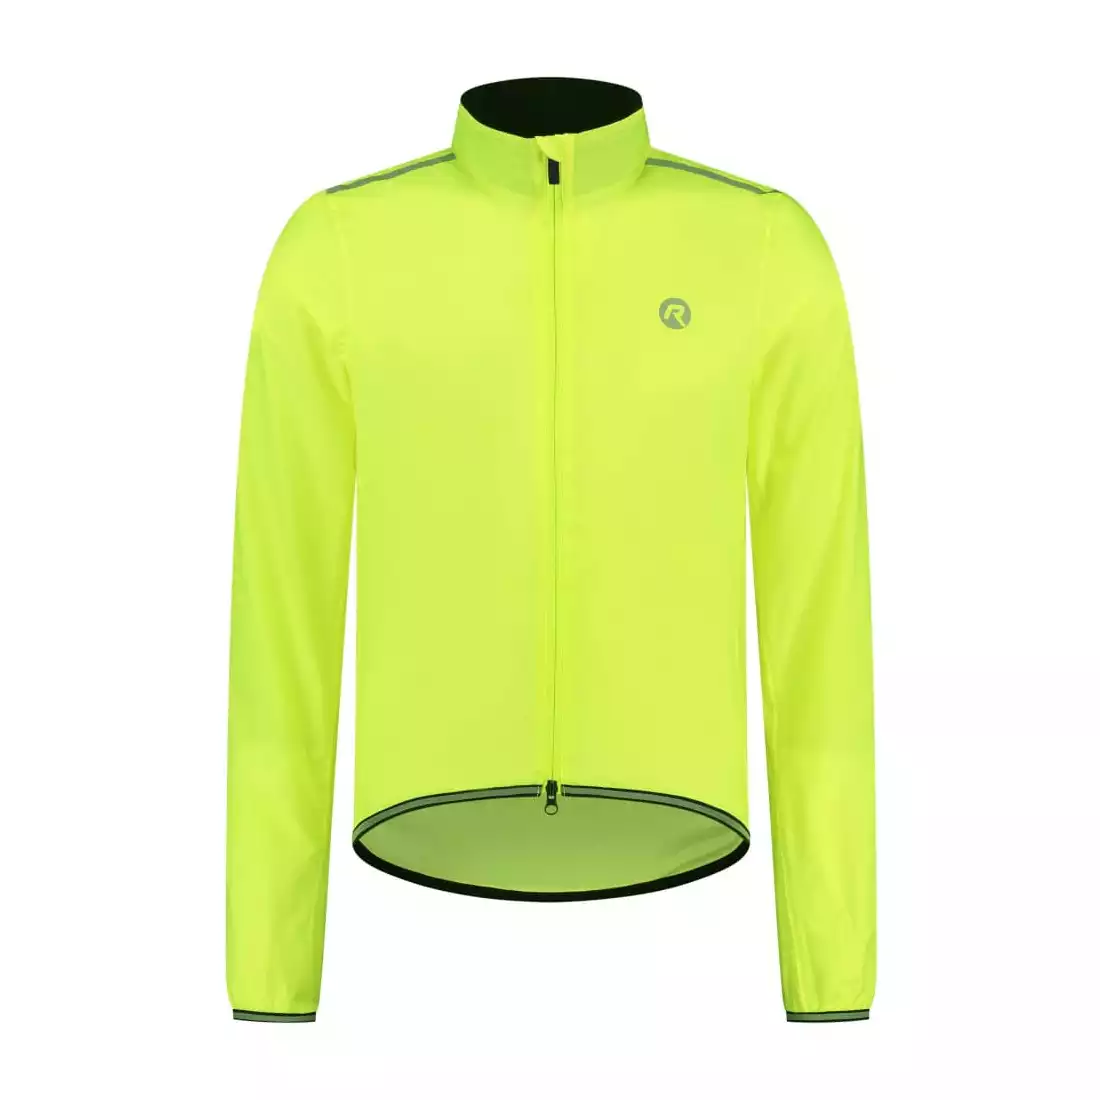 Rogelli ESSENTIAL jachetă de ploaie pentru ciclism pentru bărbați, fluor